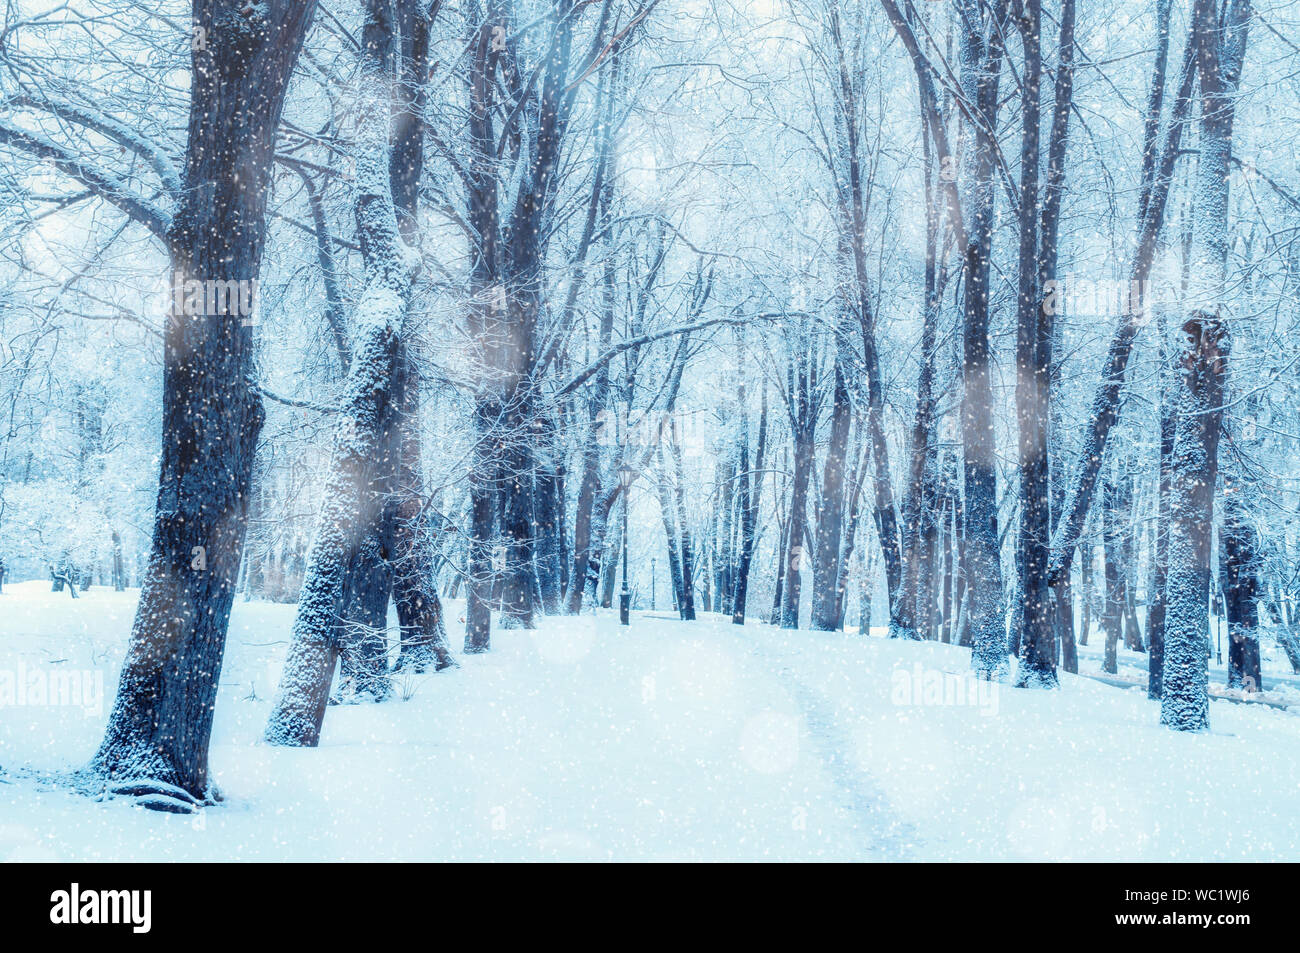 Hiver neige paysage d'hiver, arbres au bord de l'allée du parc d'hiver - scène de neige avec des arbres sous la neige en hiver jour Banque D'Images